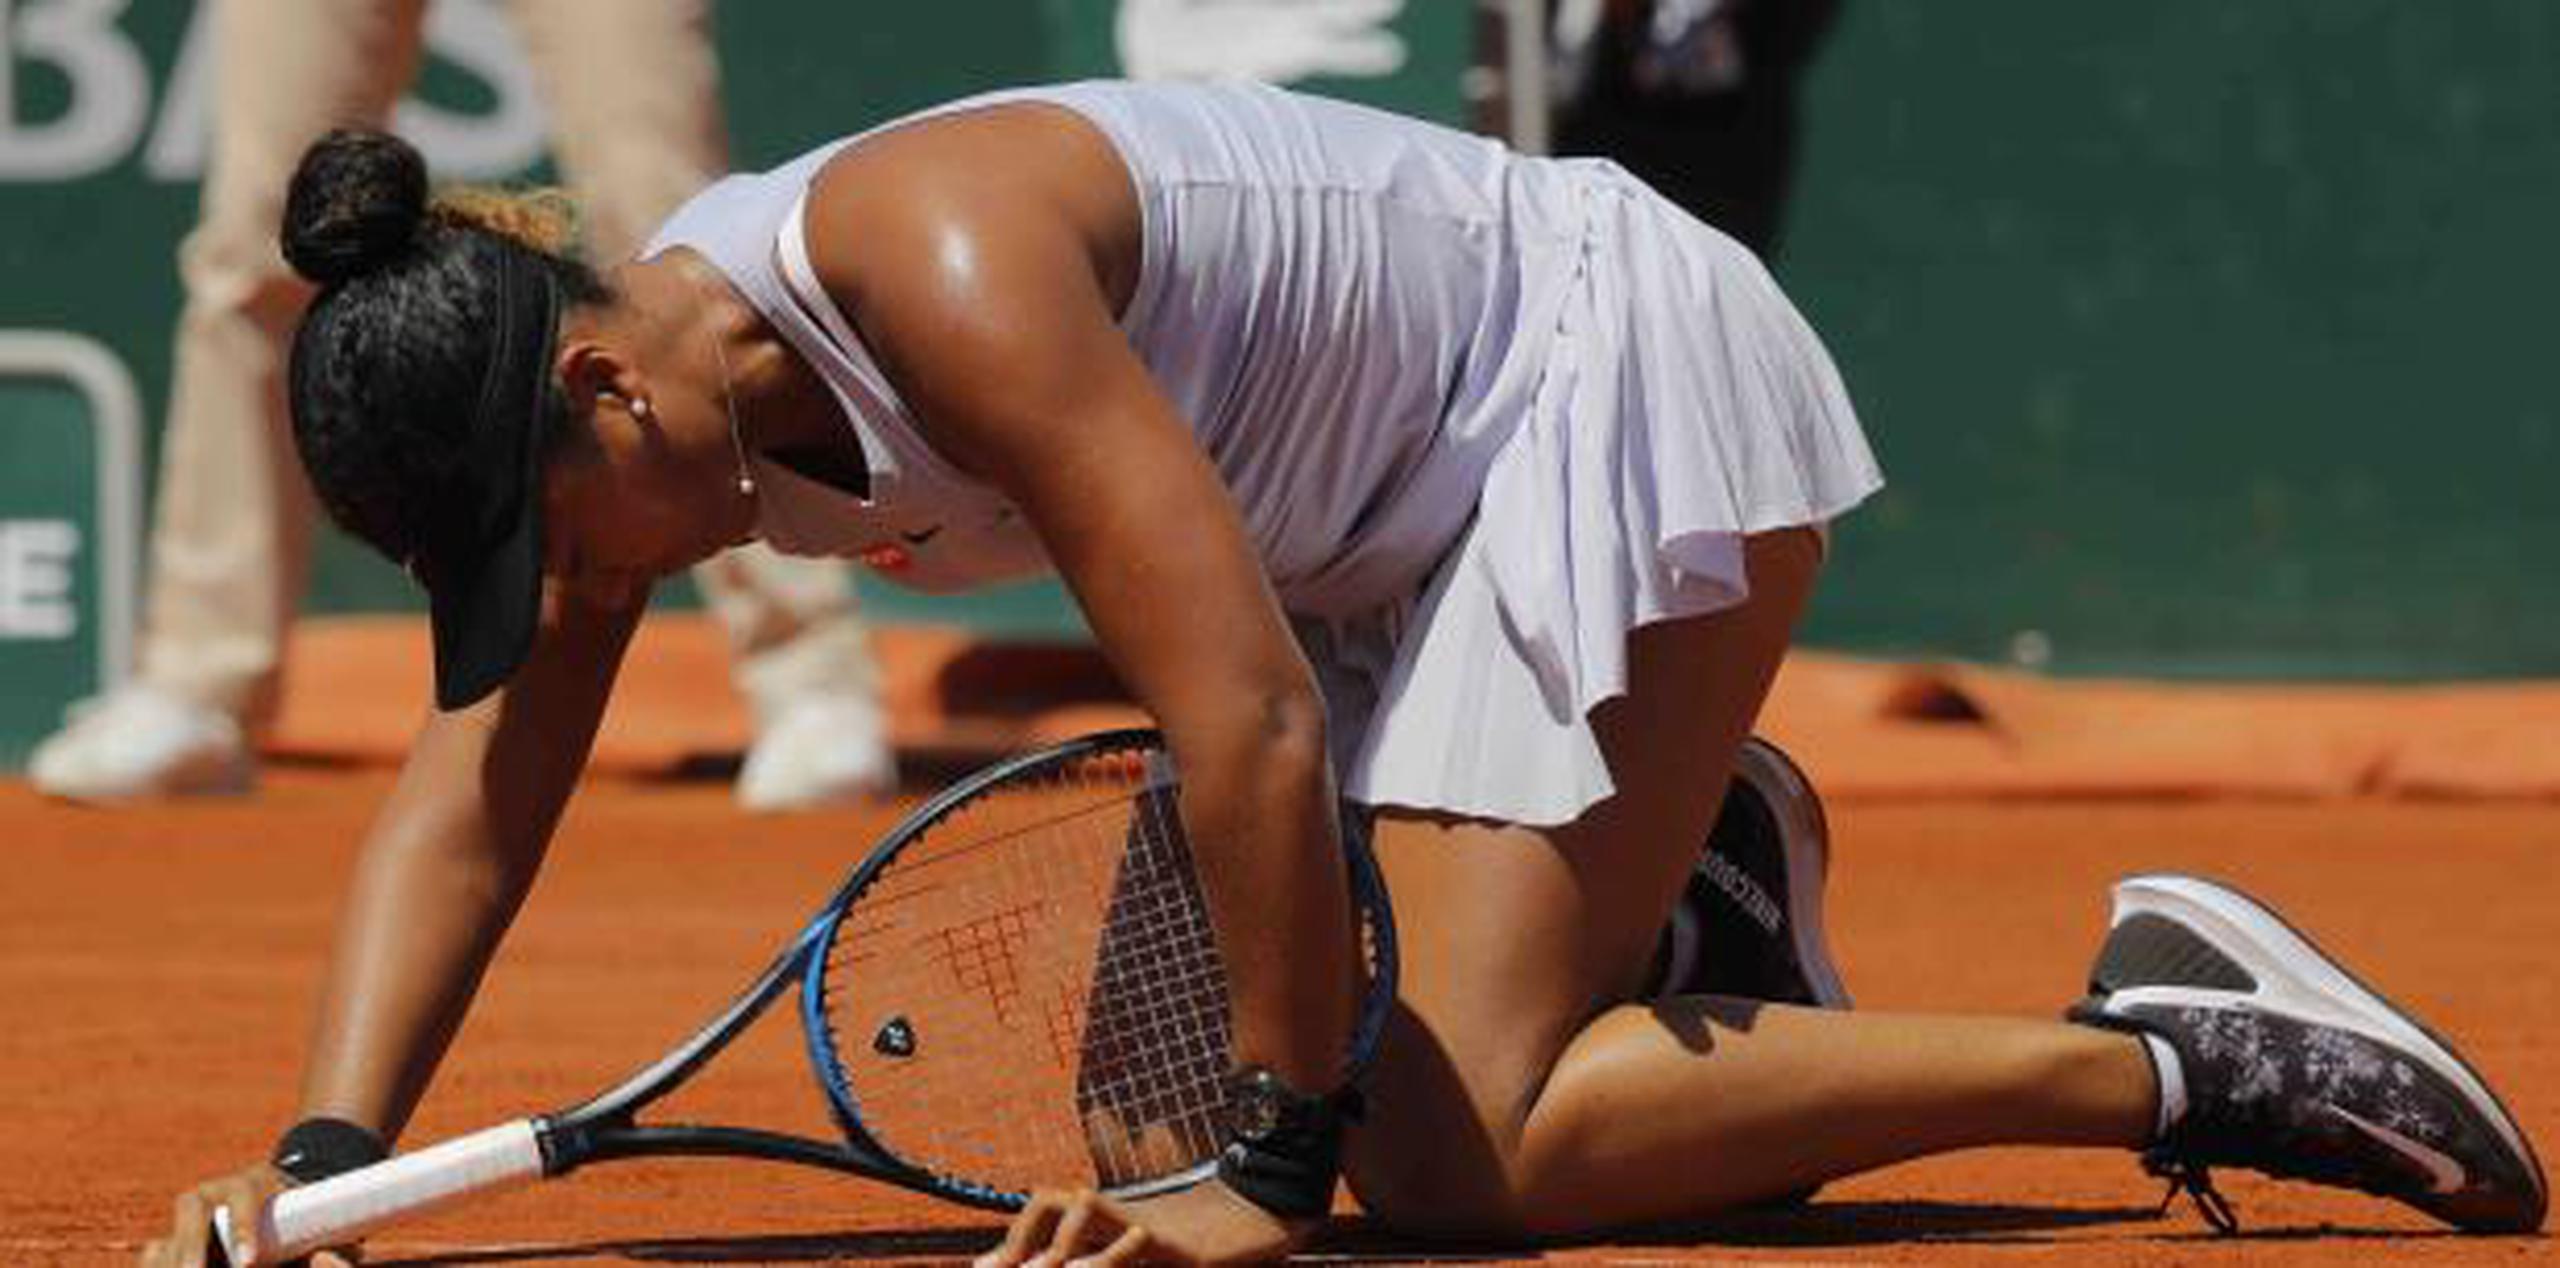 La número uno mundial Naomi Osaka no pudo lograr una remontada, tras arrancar de nuevo abajo en Roland Garros, y terminó perdiendo 6-4, 6-2 ante la checa Katerina Siniakova. (AP)